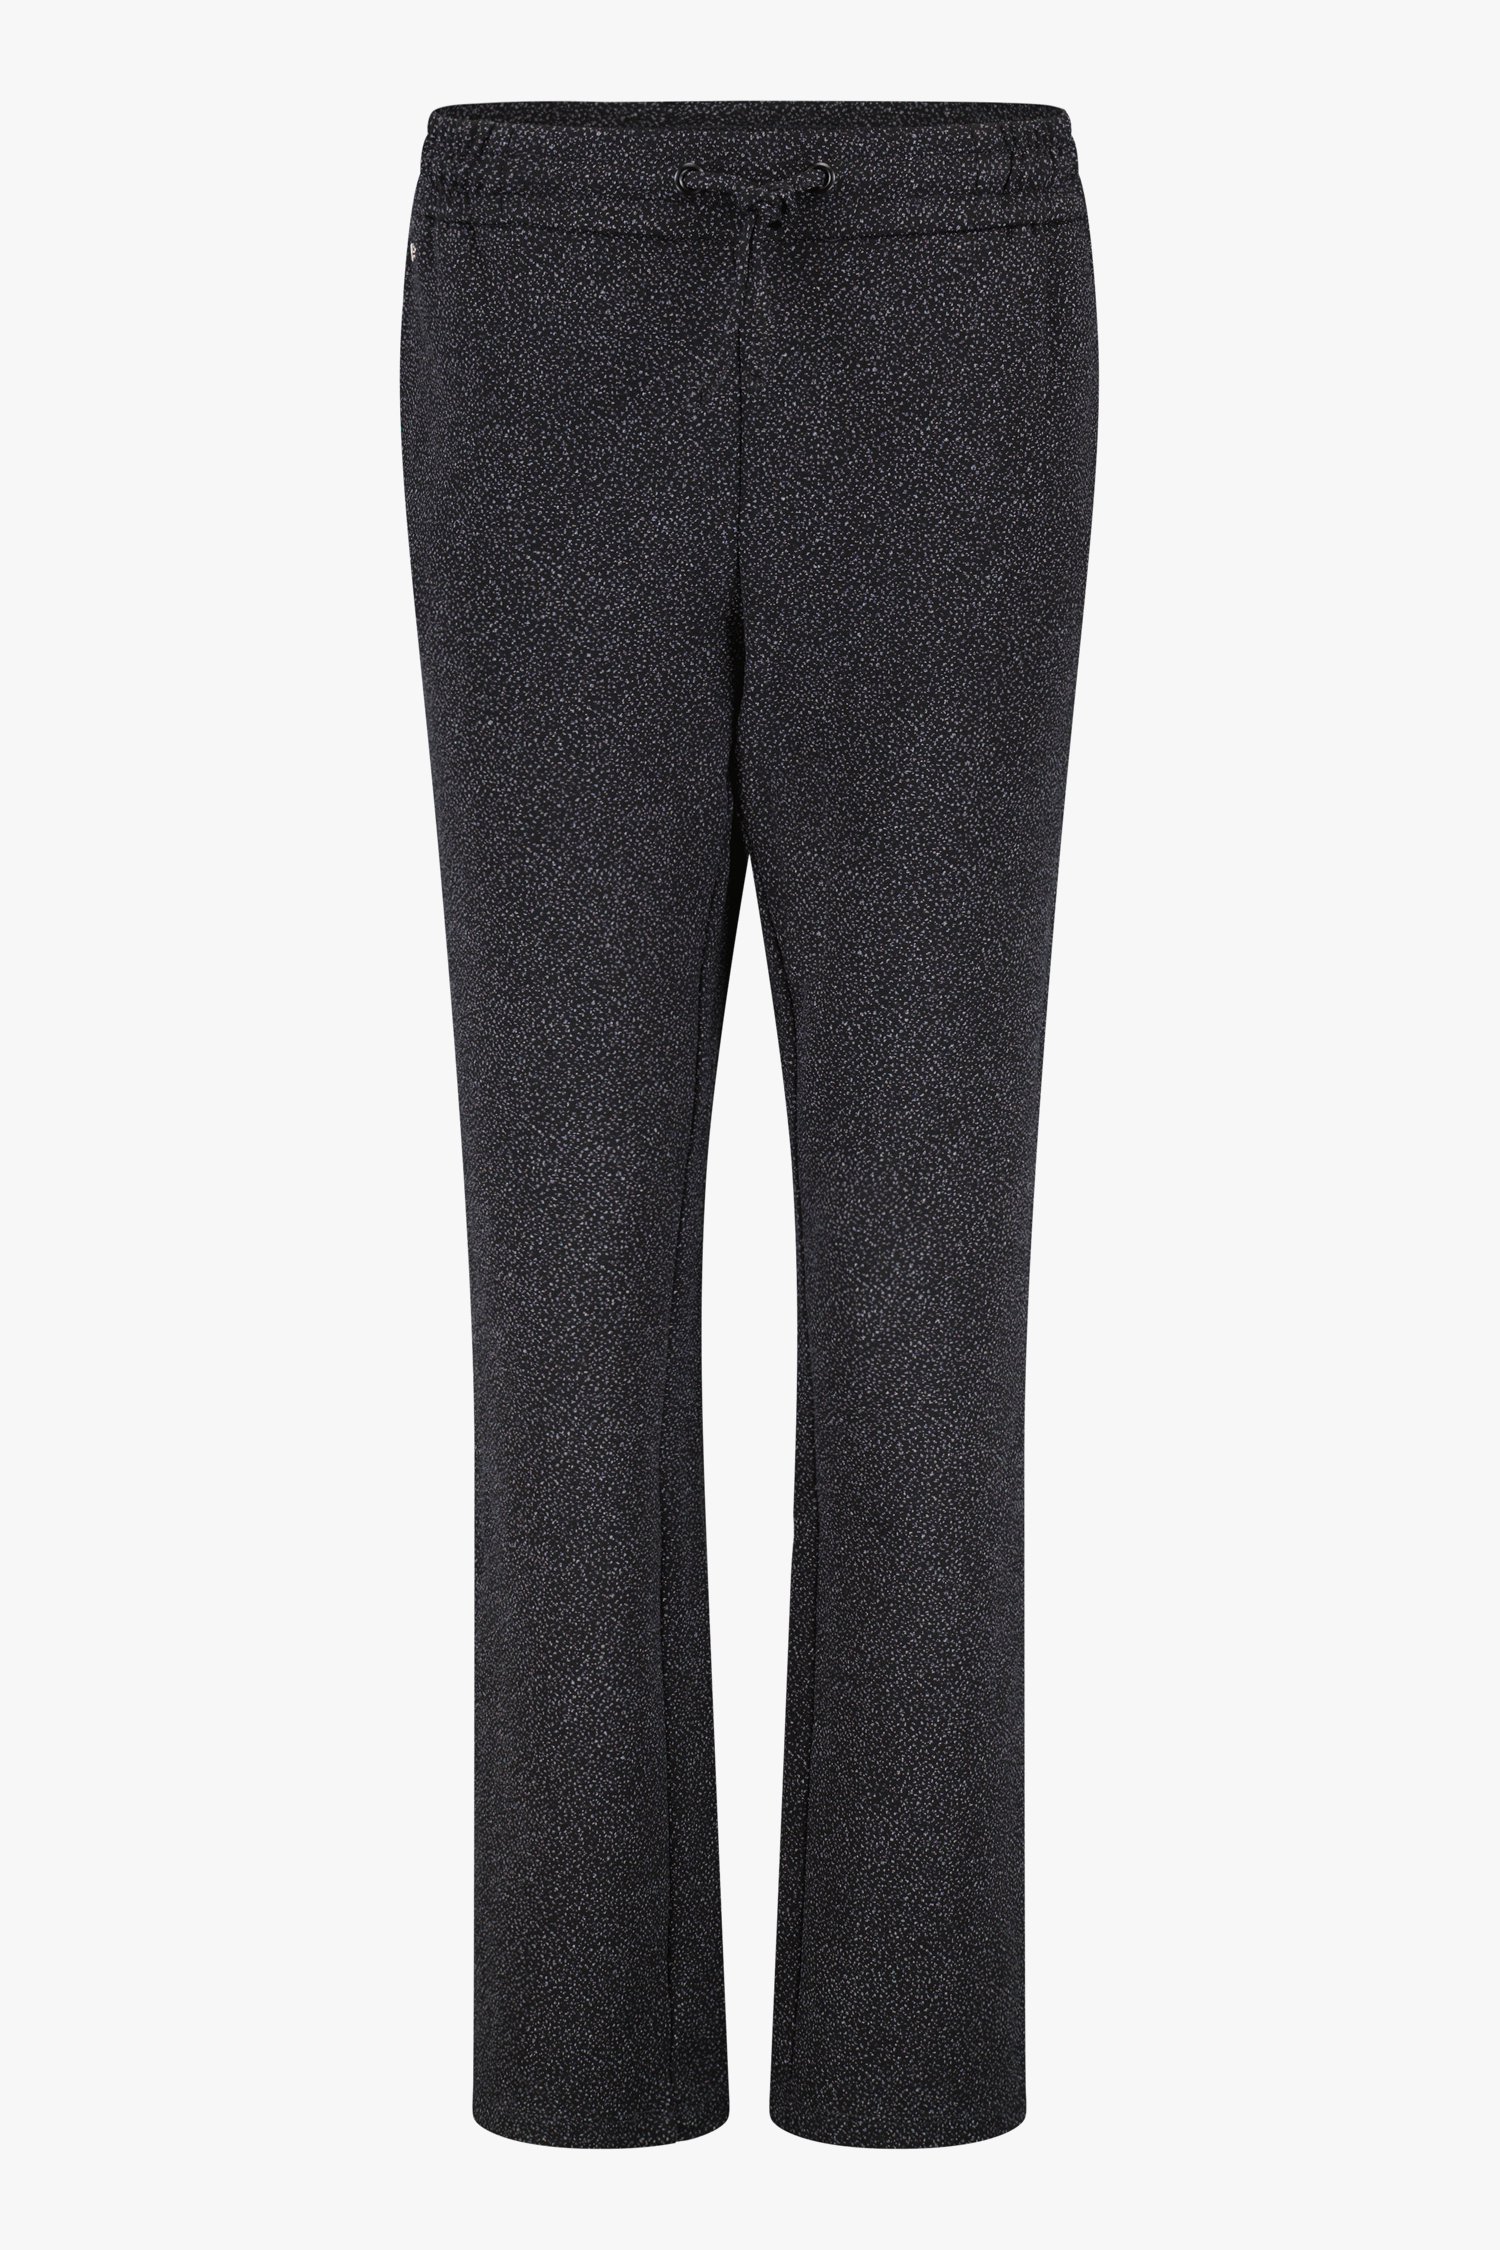 Zwarte gespikkelde broek met elastische taille van Claude Arielle voor Dames